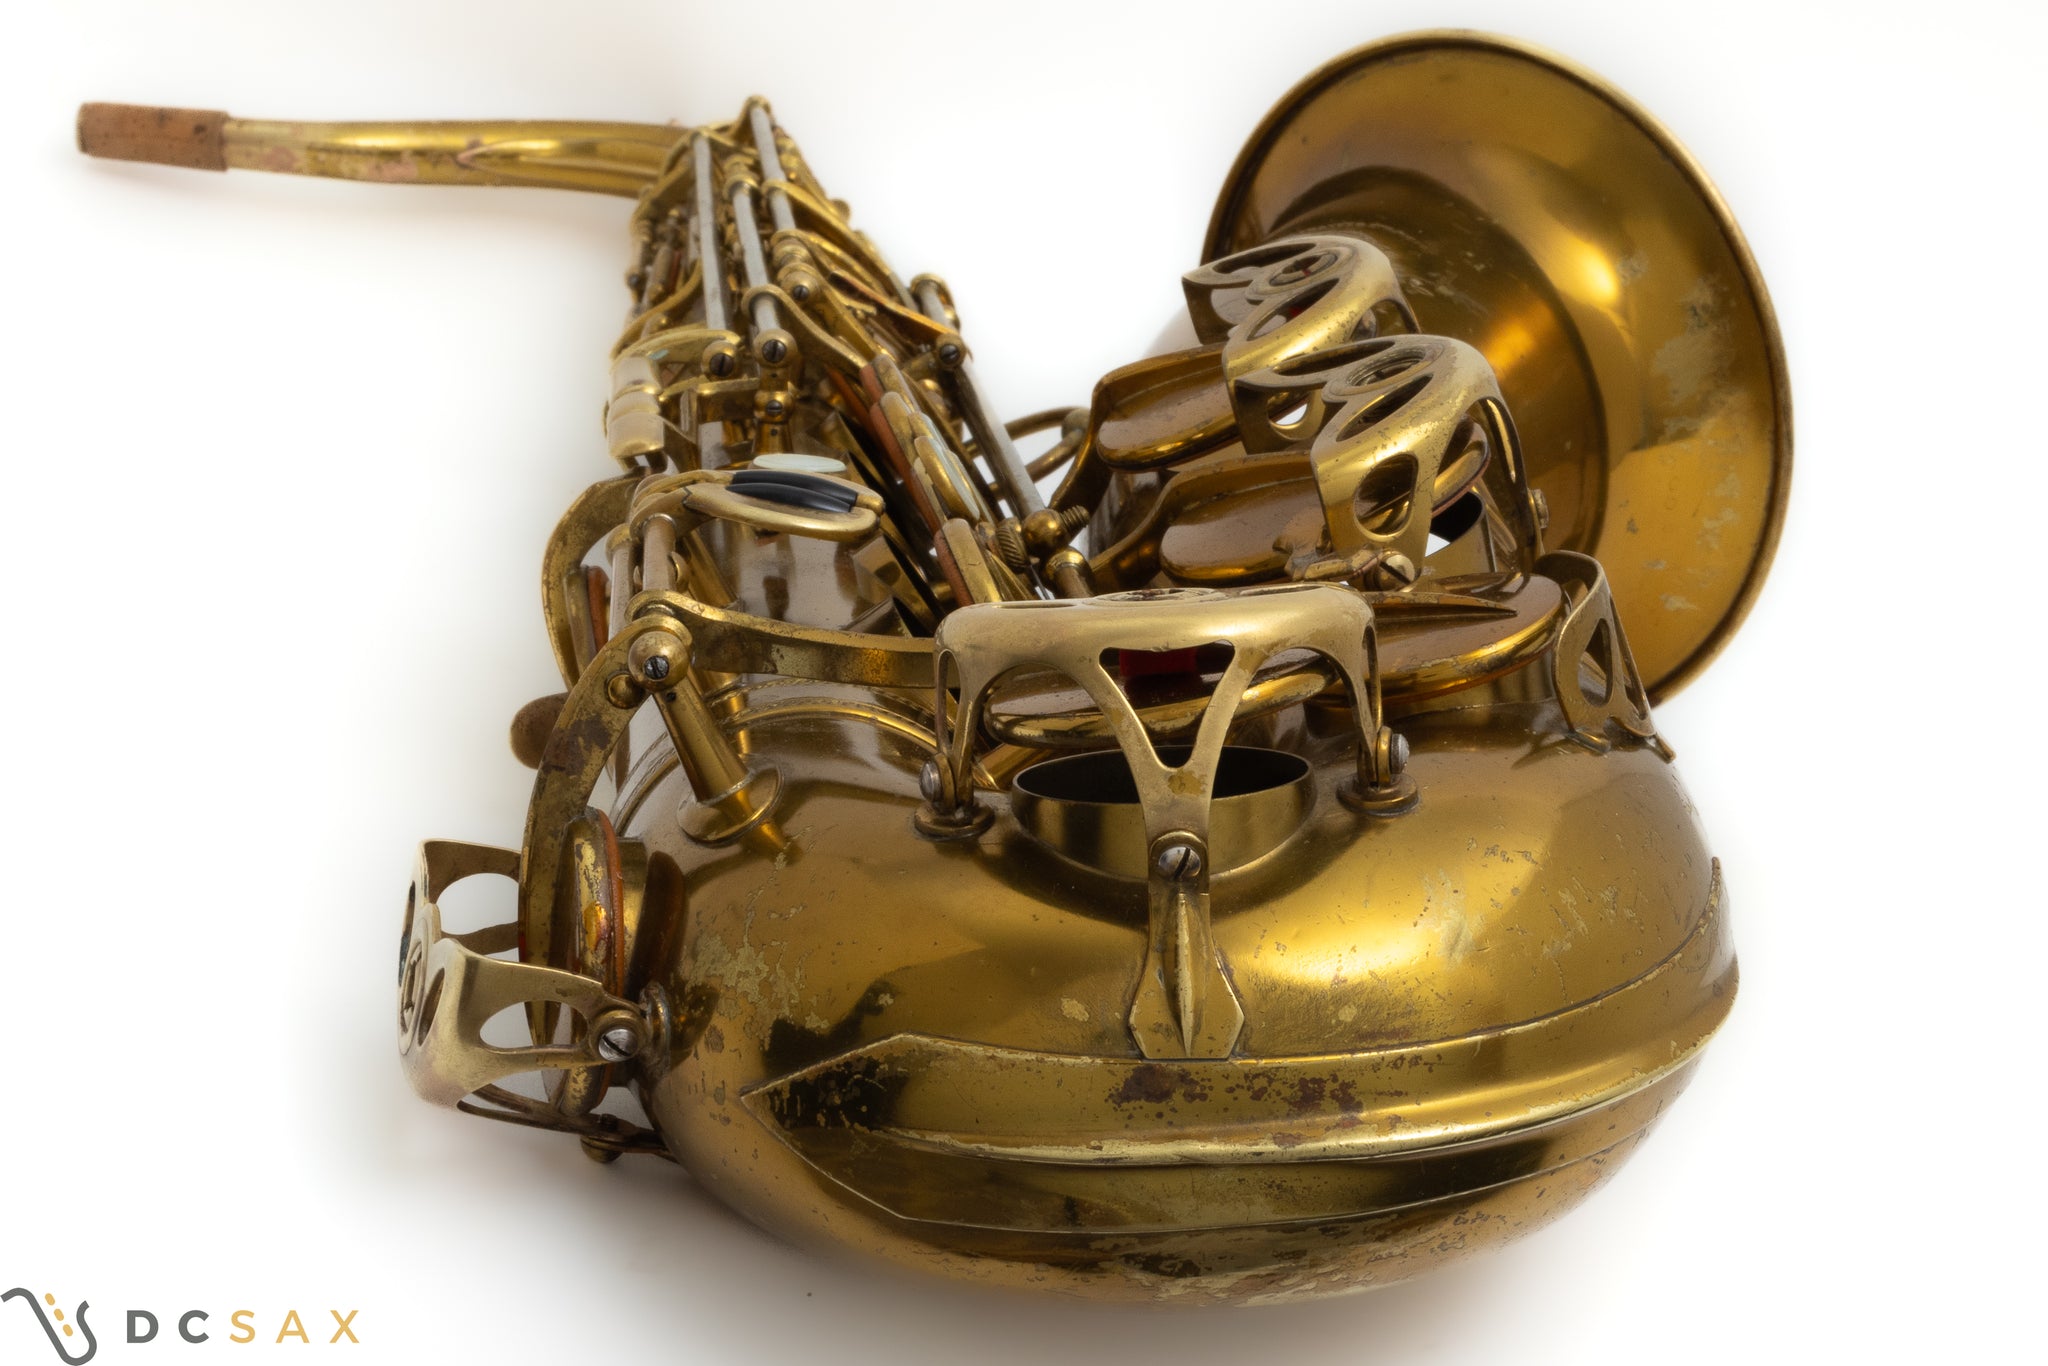 1936 Selmer Balanced Action Tenor Saxophone, Original Lacquer, Video